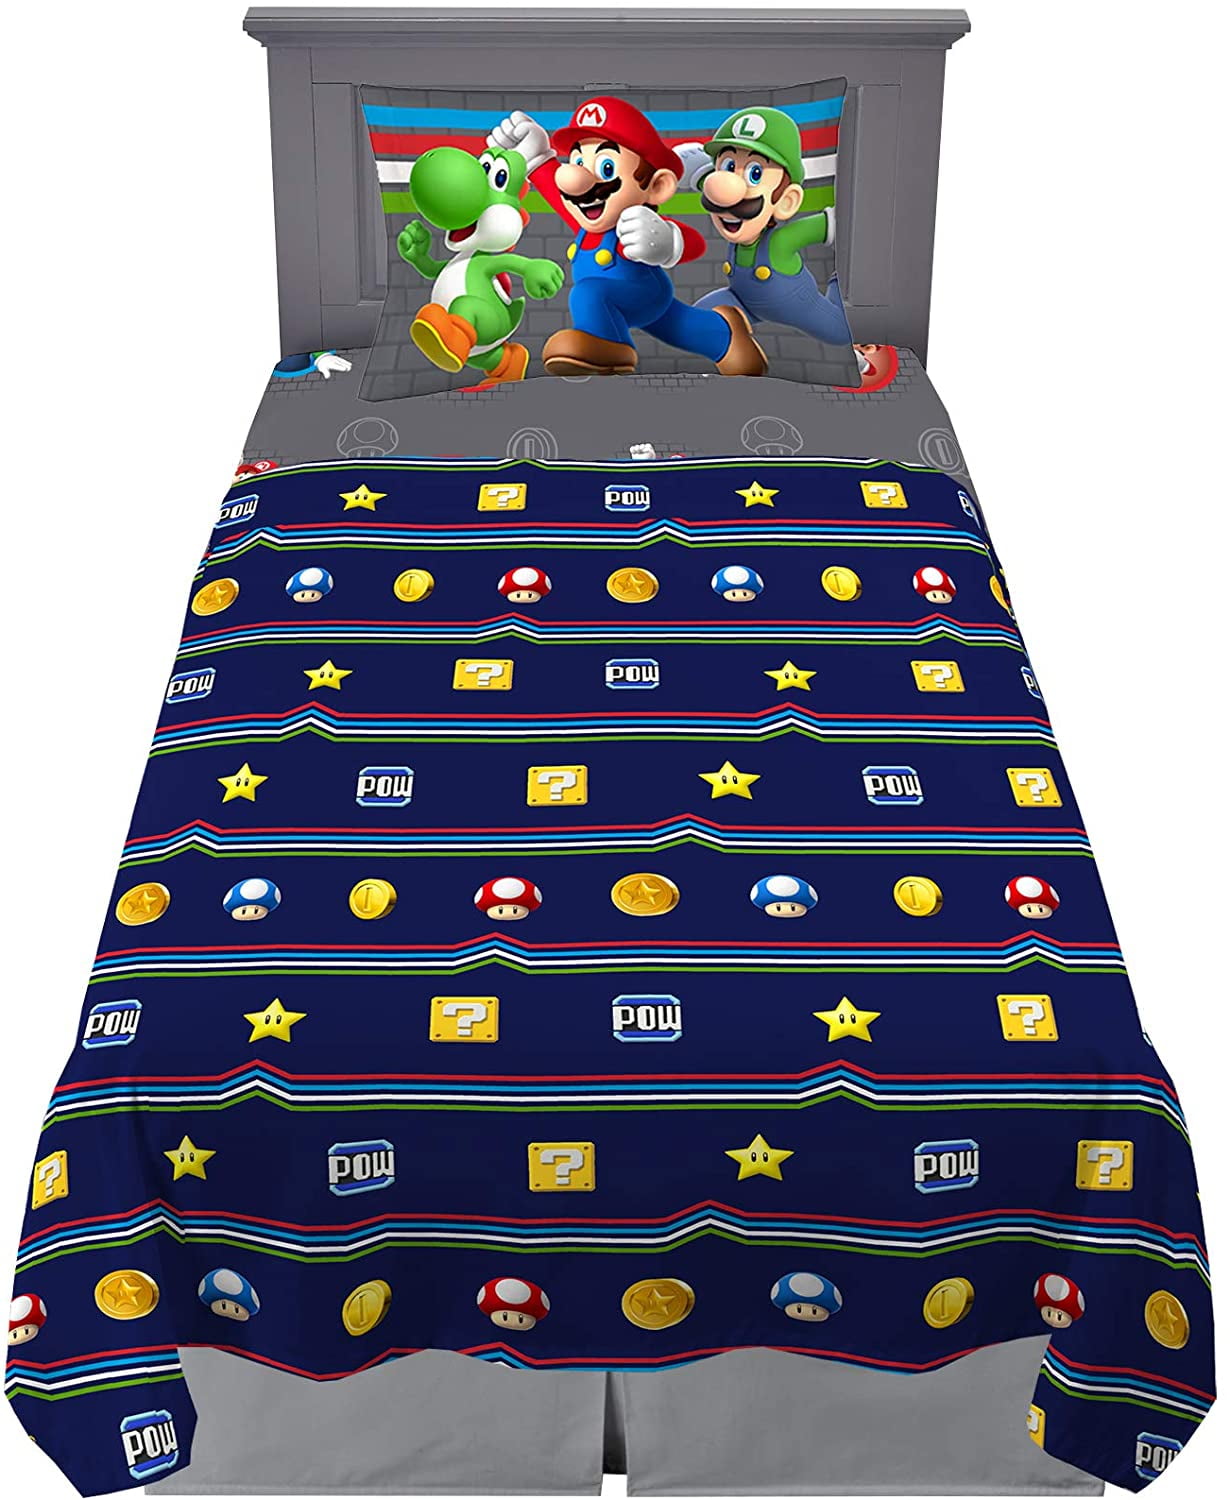 1800 pieces Super Luigi 